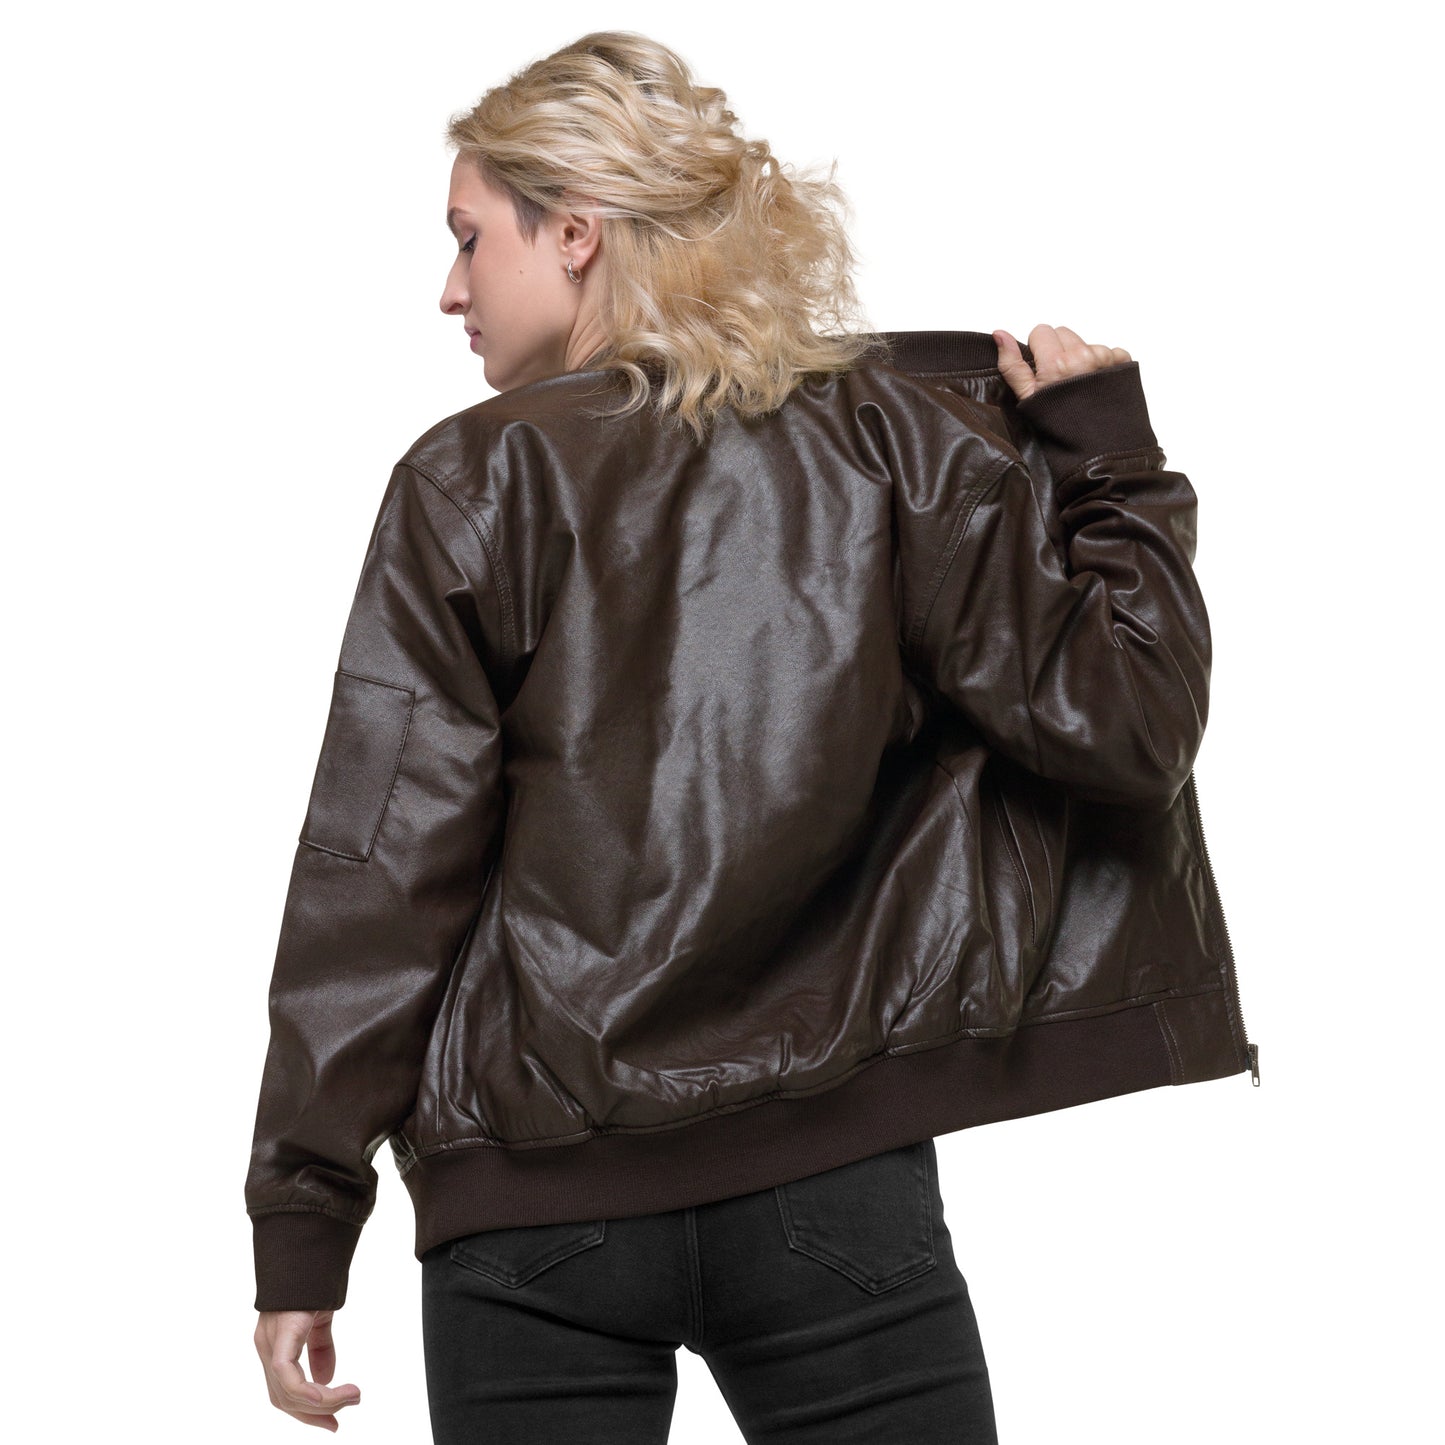 Leather Bomber Jacket - Short & sweet